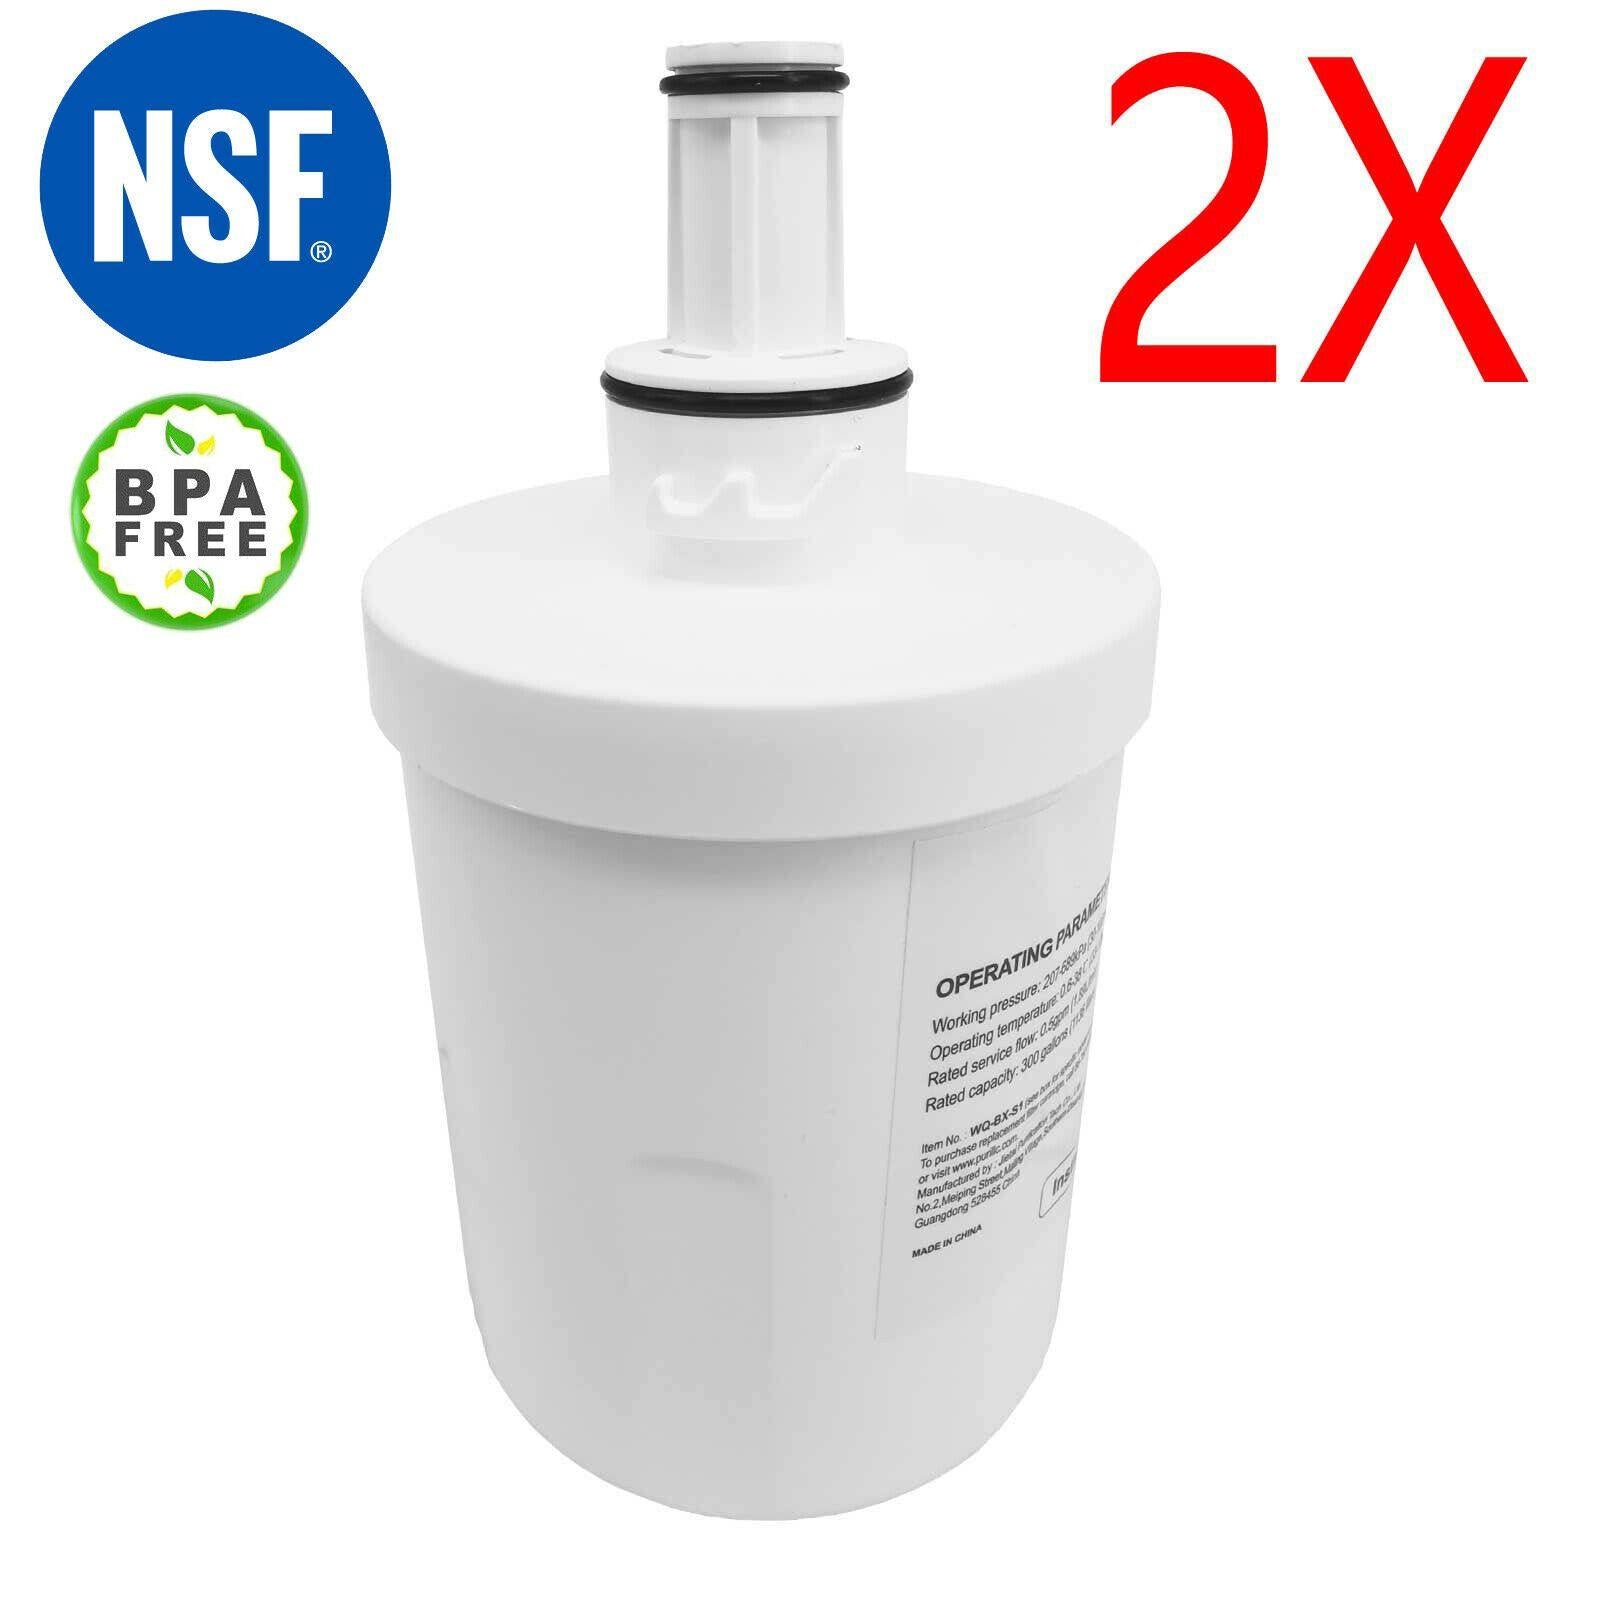 2X Refridgerator Water Filter for Samsung SGF-DSB30 DA29-00003GWF Sparesbarn